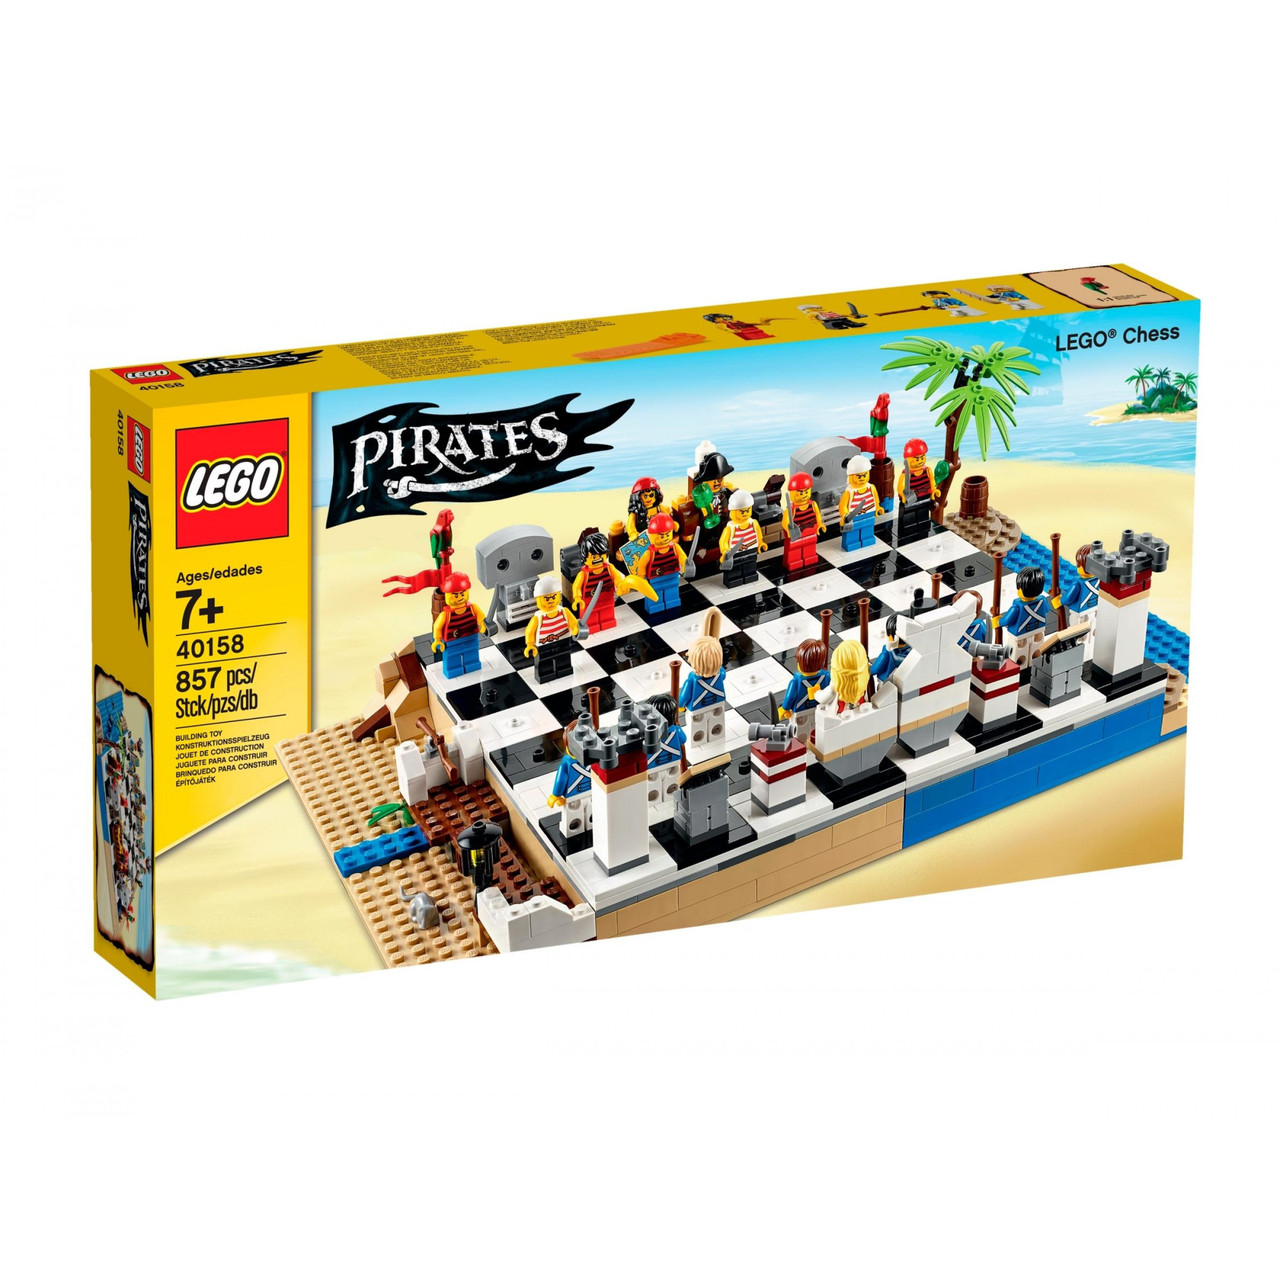 LEGO Pirates 40158 Pirates Chess Set Піратські шахи